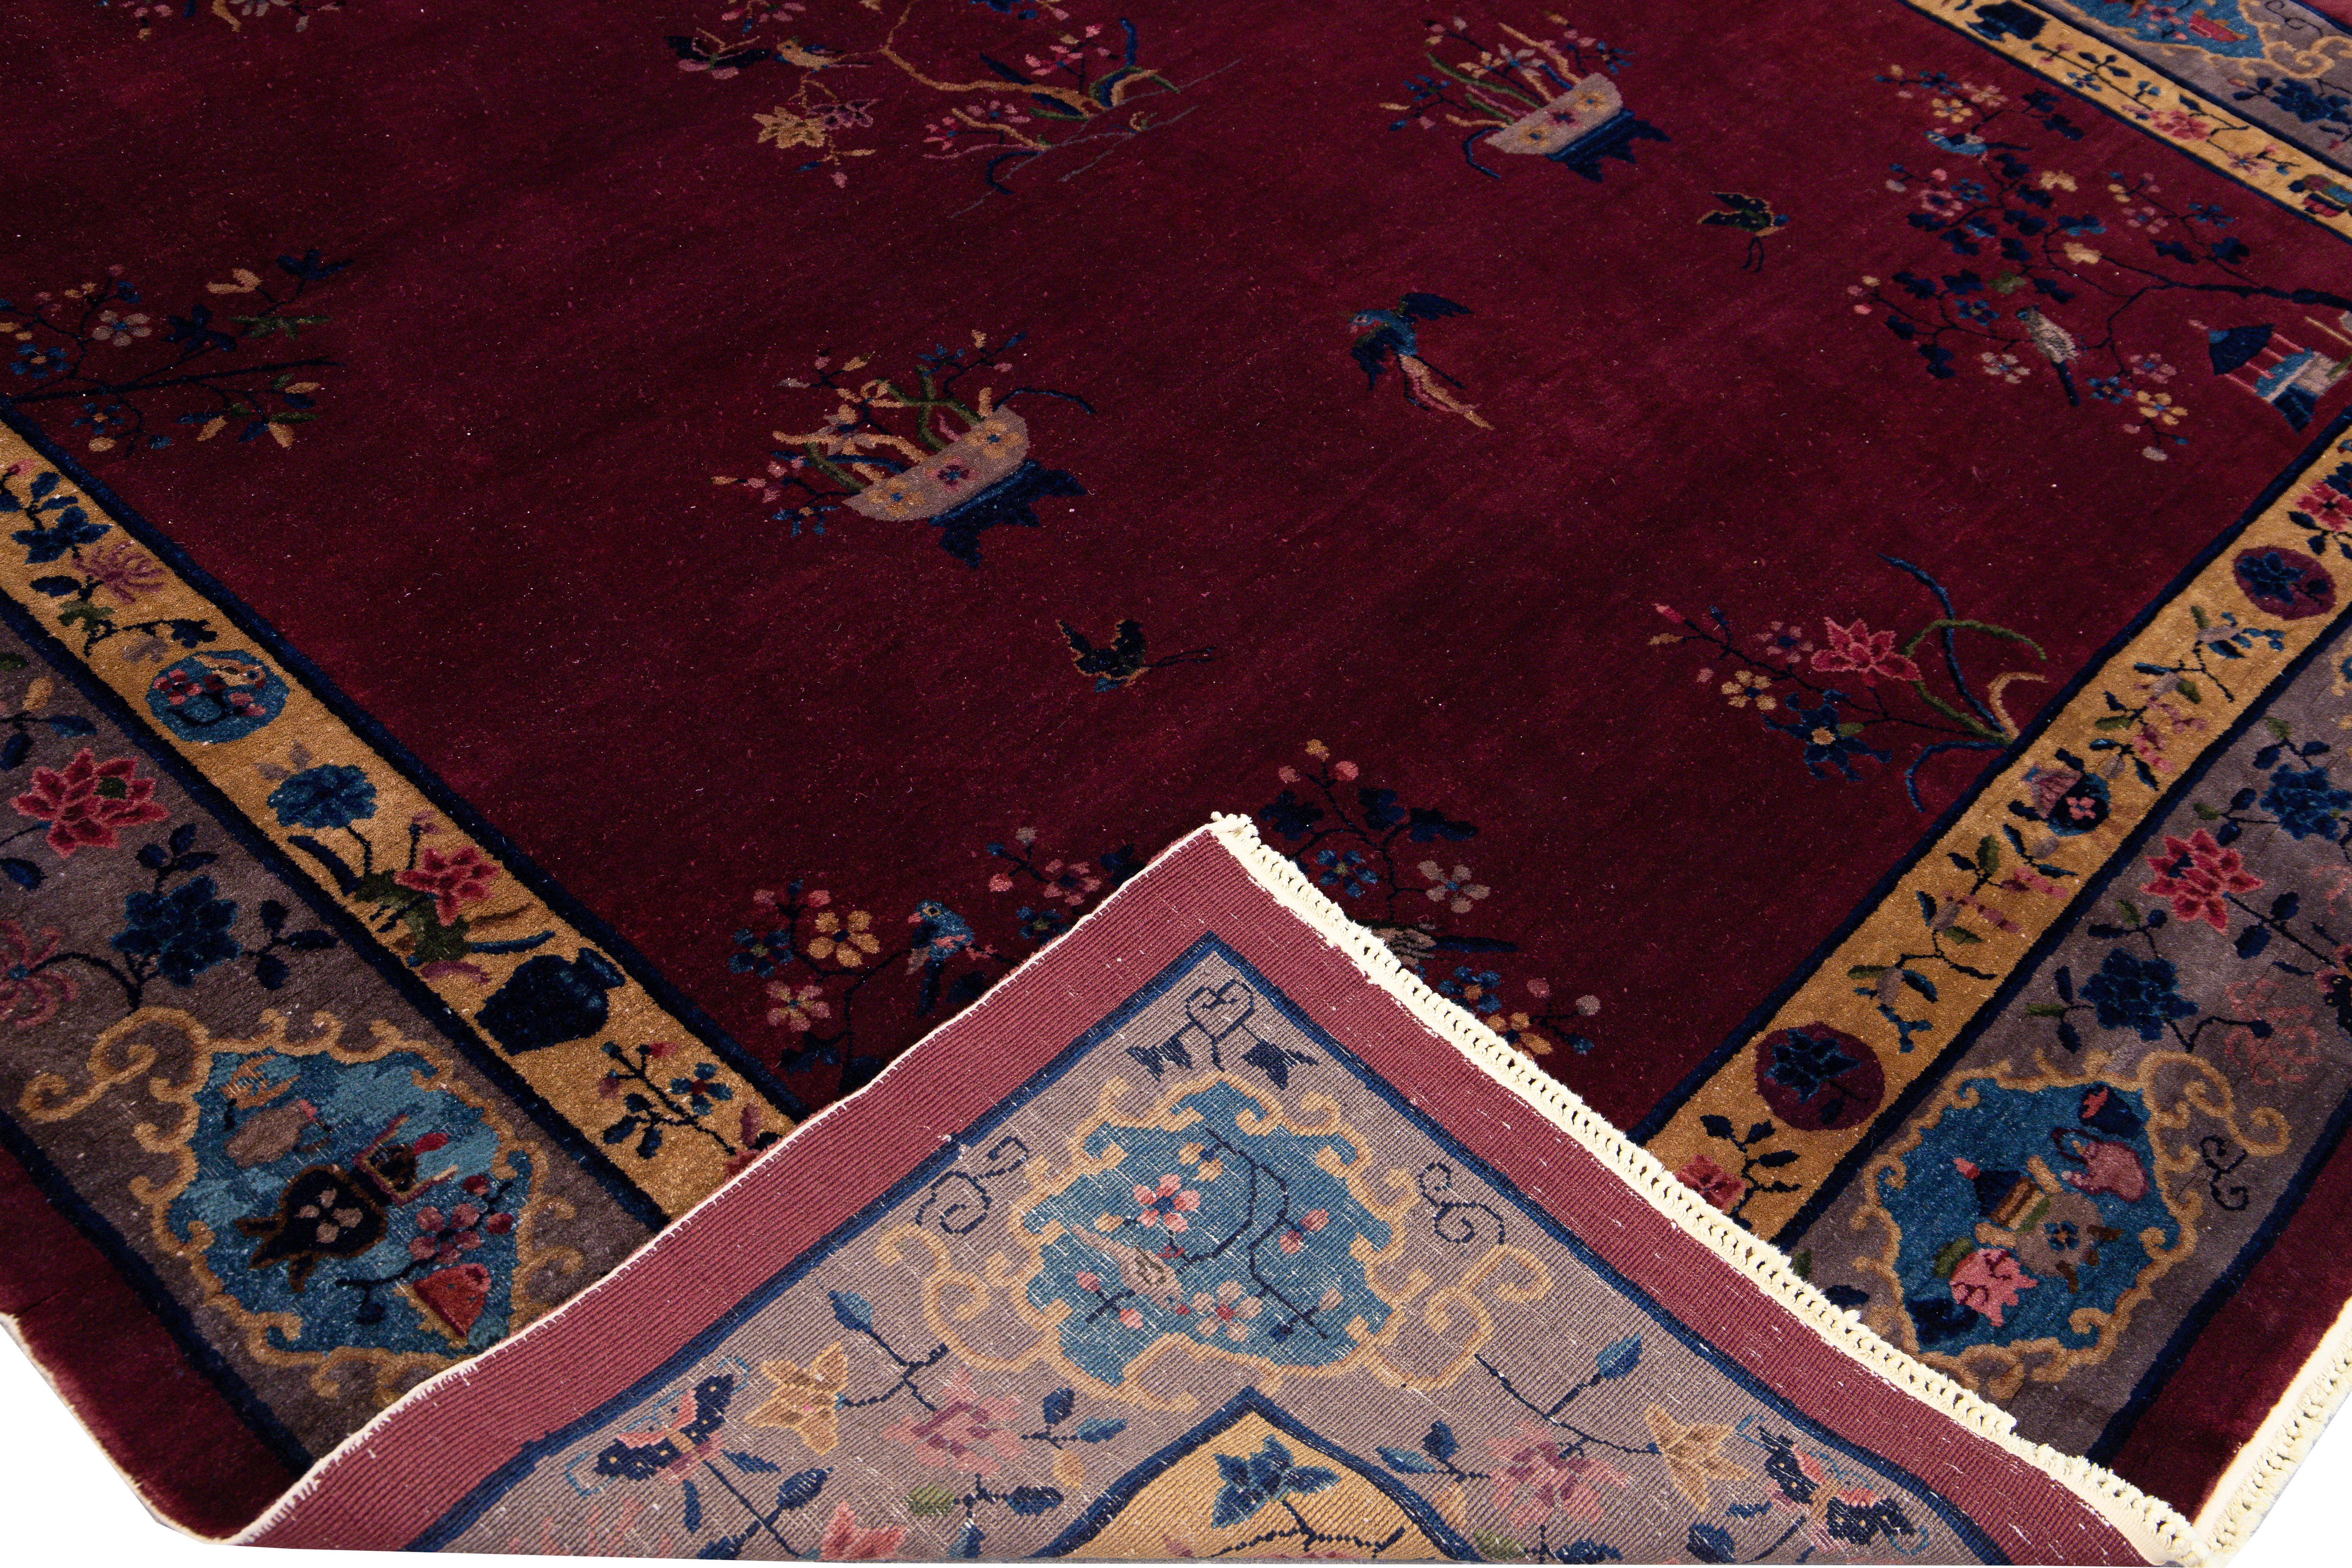 Magnifique tapis chinois ancien en laine nouée à la main avec un champ bordeaux. Ce tapis chinois présente un cadre violet, des accents multicolores et un magnifique motif floral chinois. 

Ce tapis mesure : 9'4